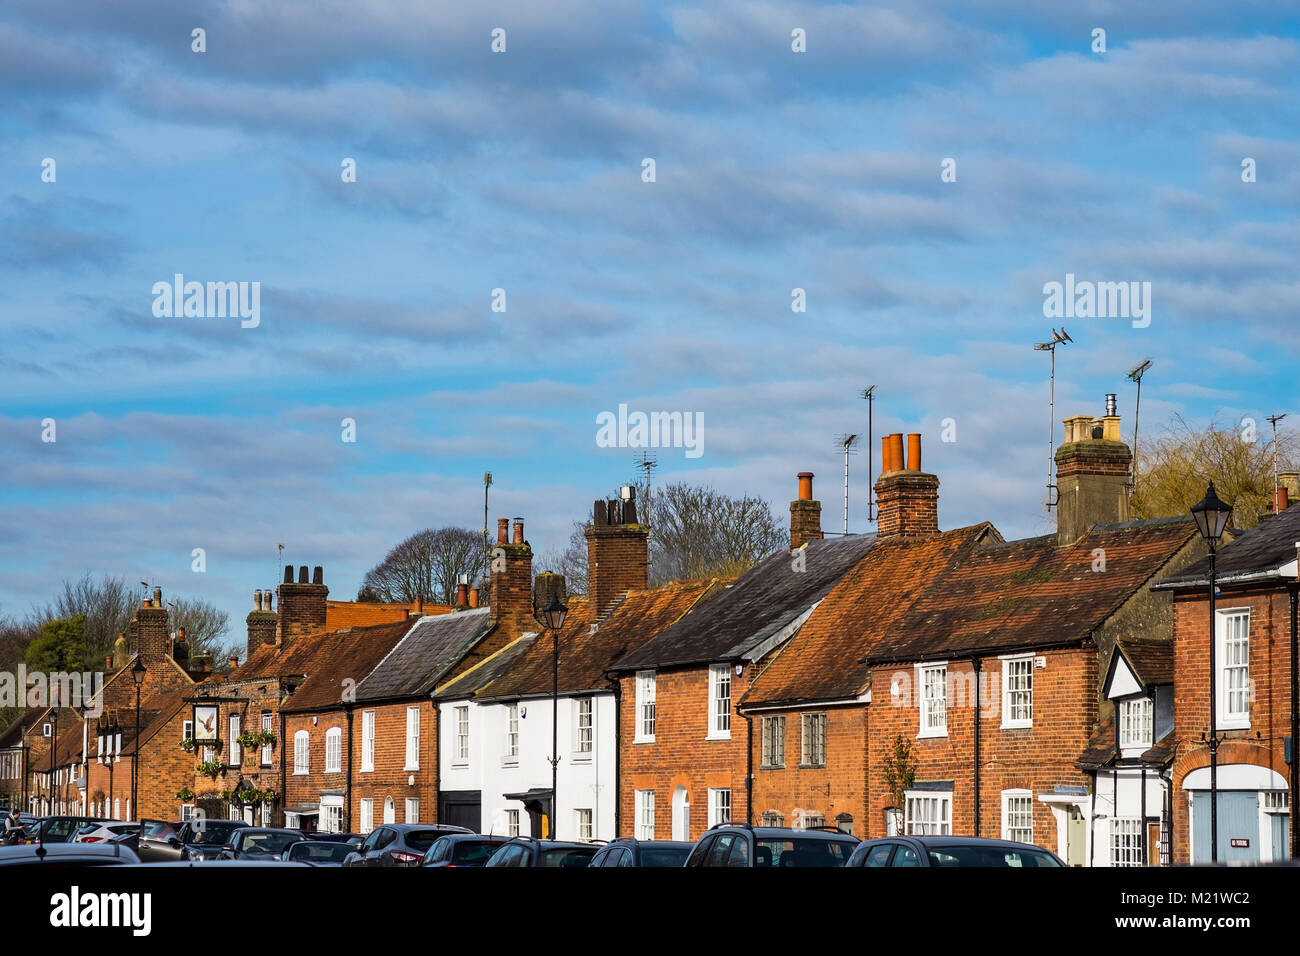 Vieille ville de Amersham, vallée de Chiltern, Buckinghamshire, Angleterre, Royaume-Uni Banque D'Images